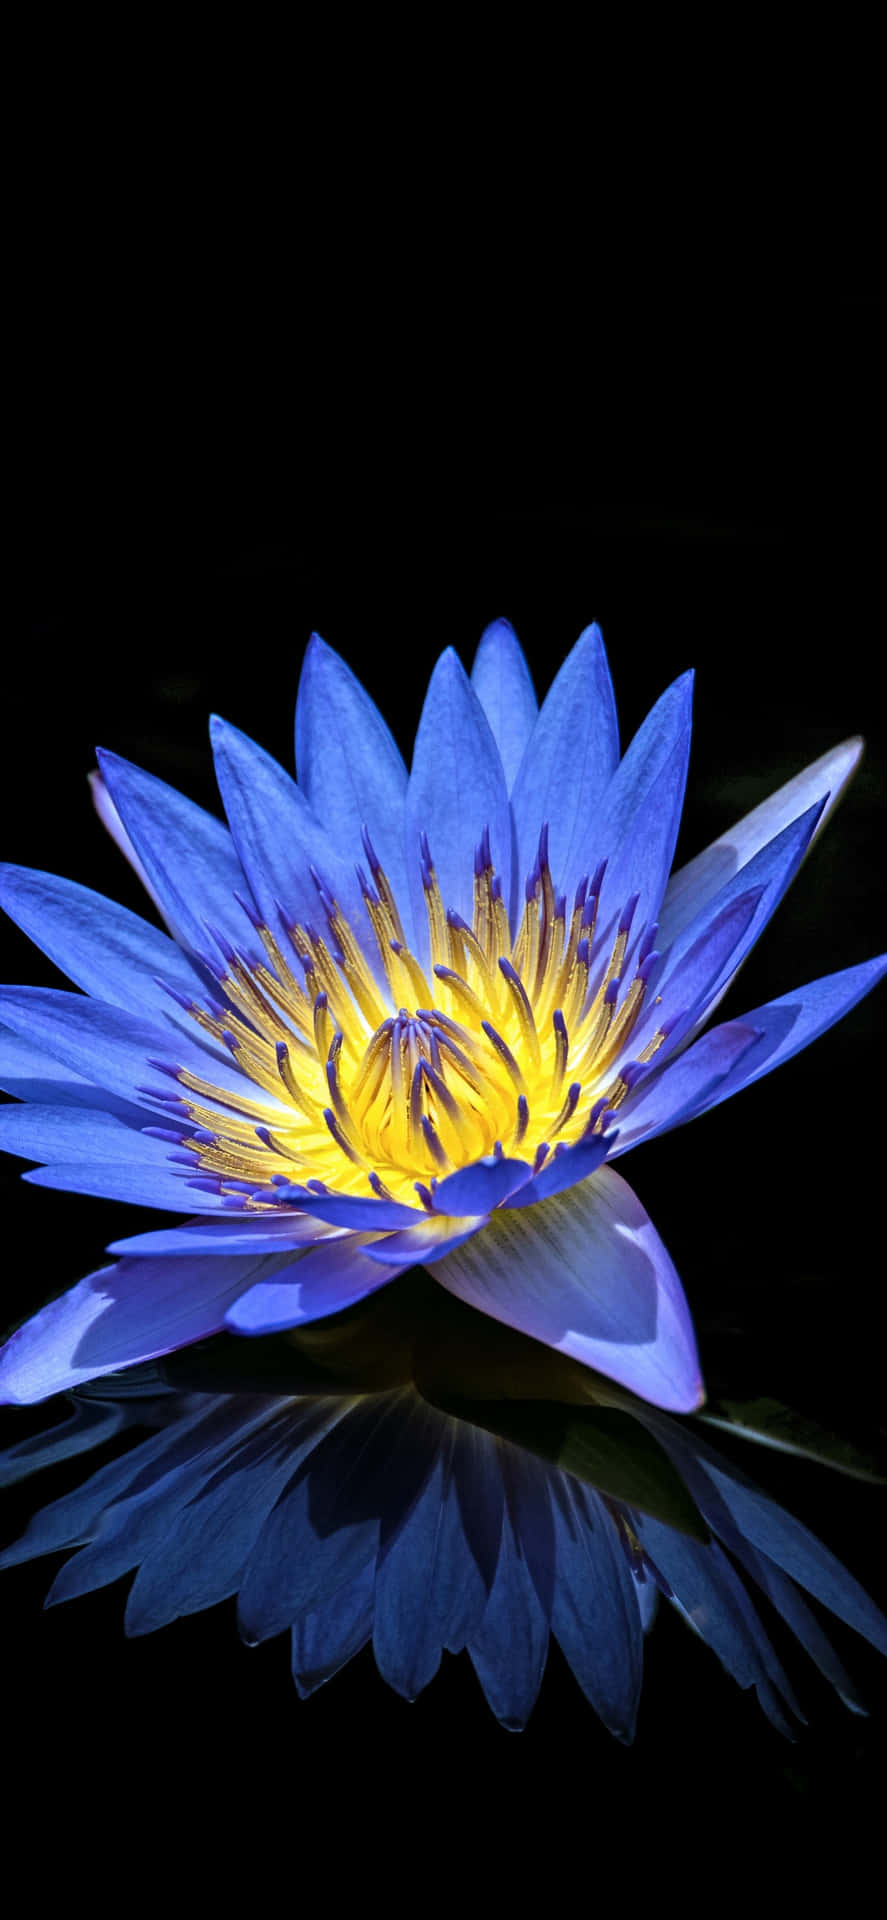 Imagemde Flor Azul De Lótus Egípcia.